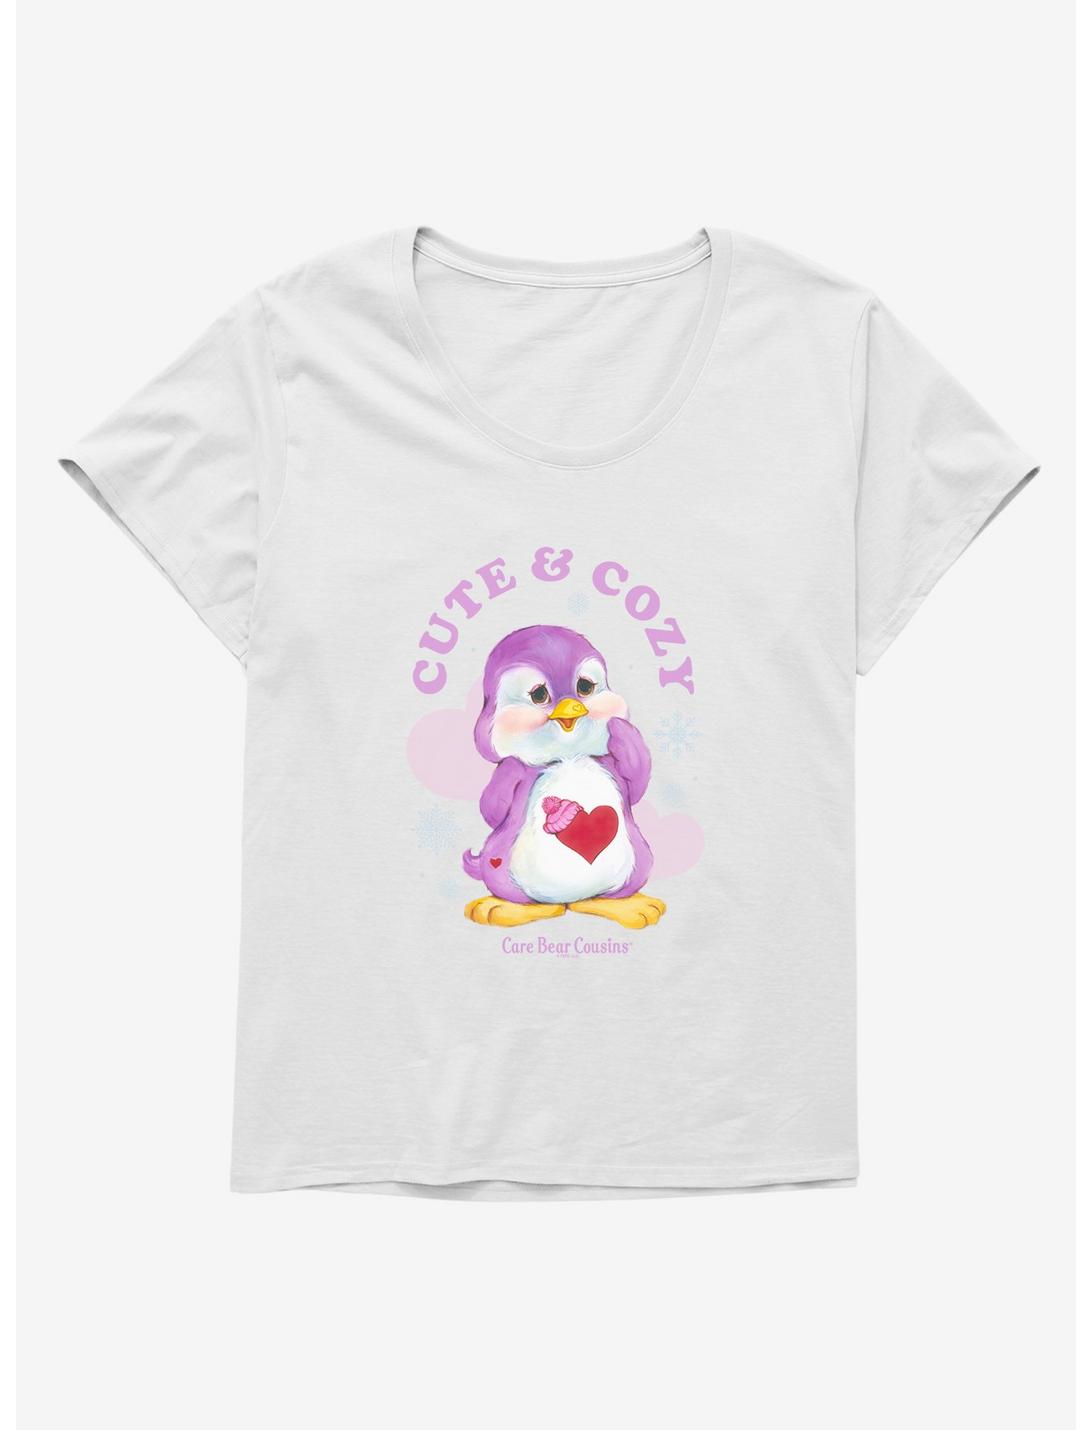 Care Bear Cousins Cozy Heart Penguin Cute & Cozy Womens T-Shirt Plus Size, WHITE, hi-res